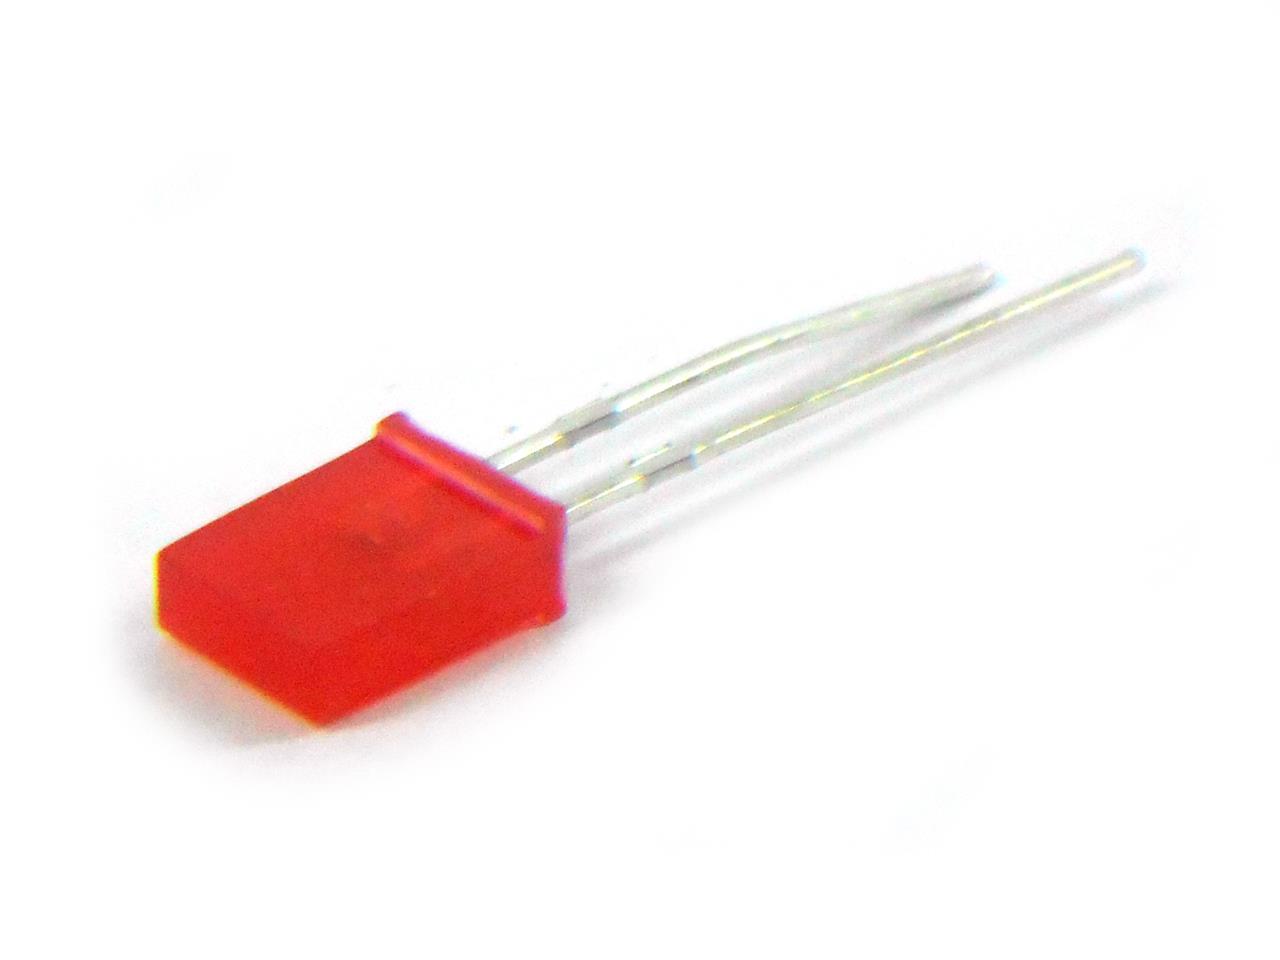 Diodos semicondutores retificadores, detectores e emissores de luz - LED vermelho retangular